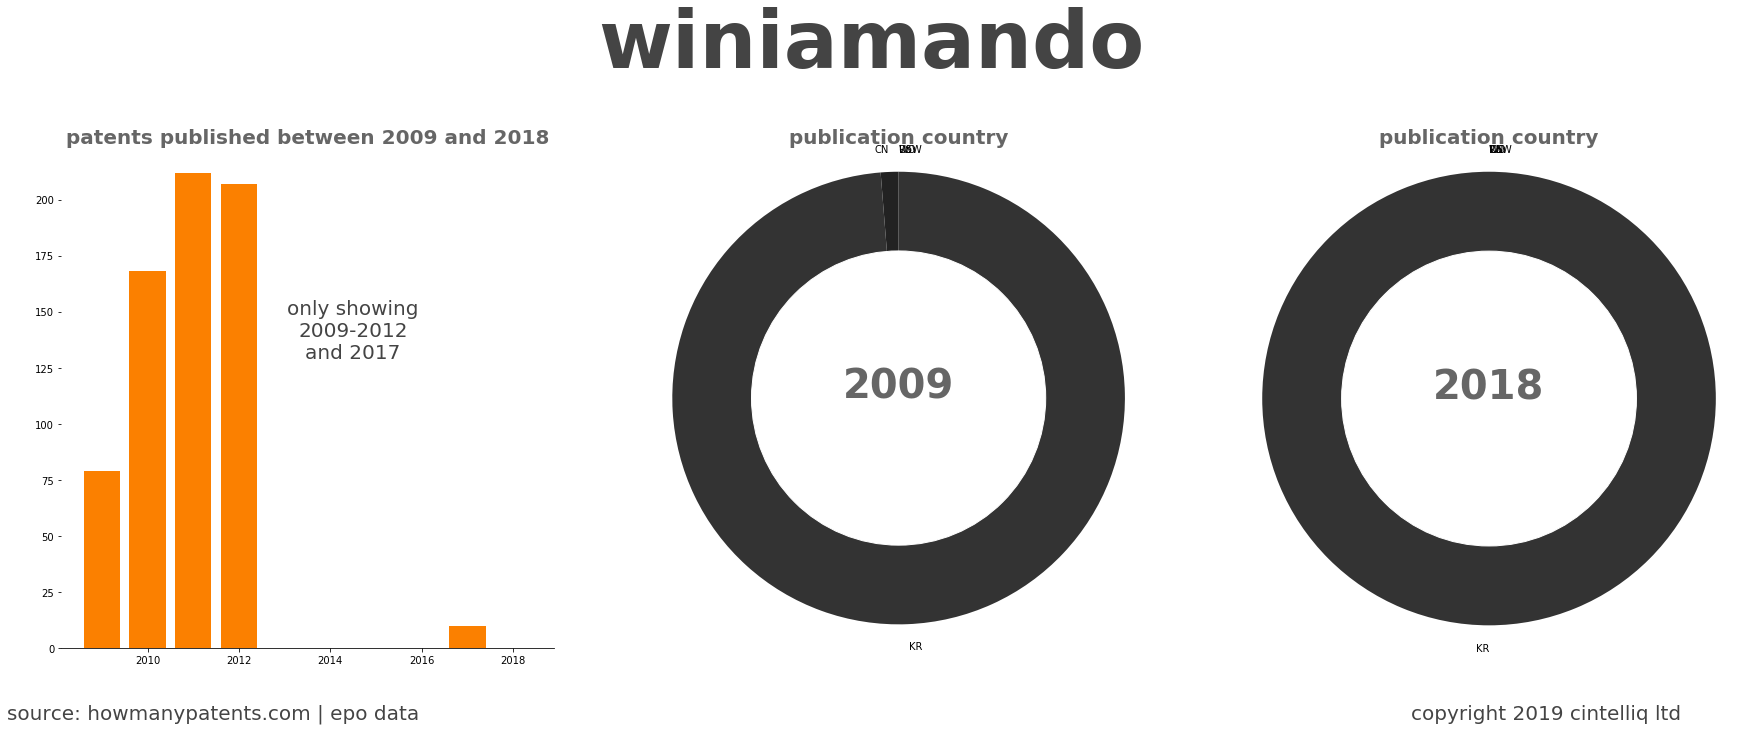 summary of patents for Winiamando